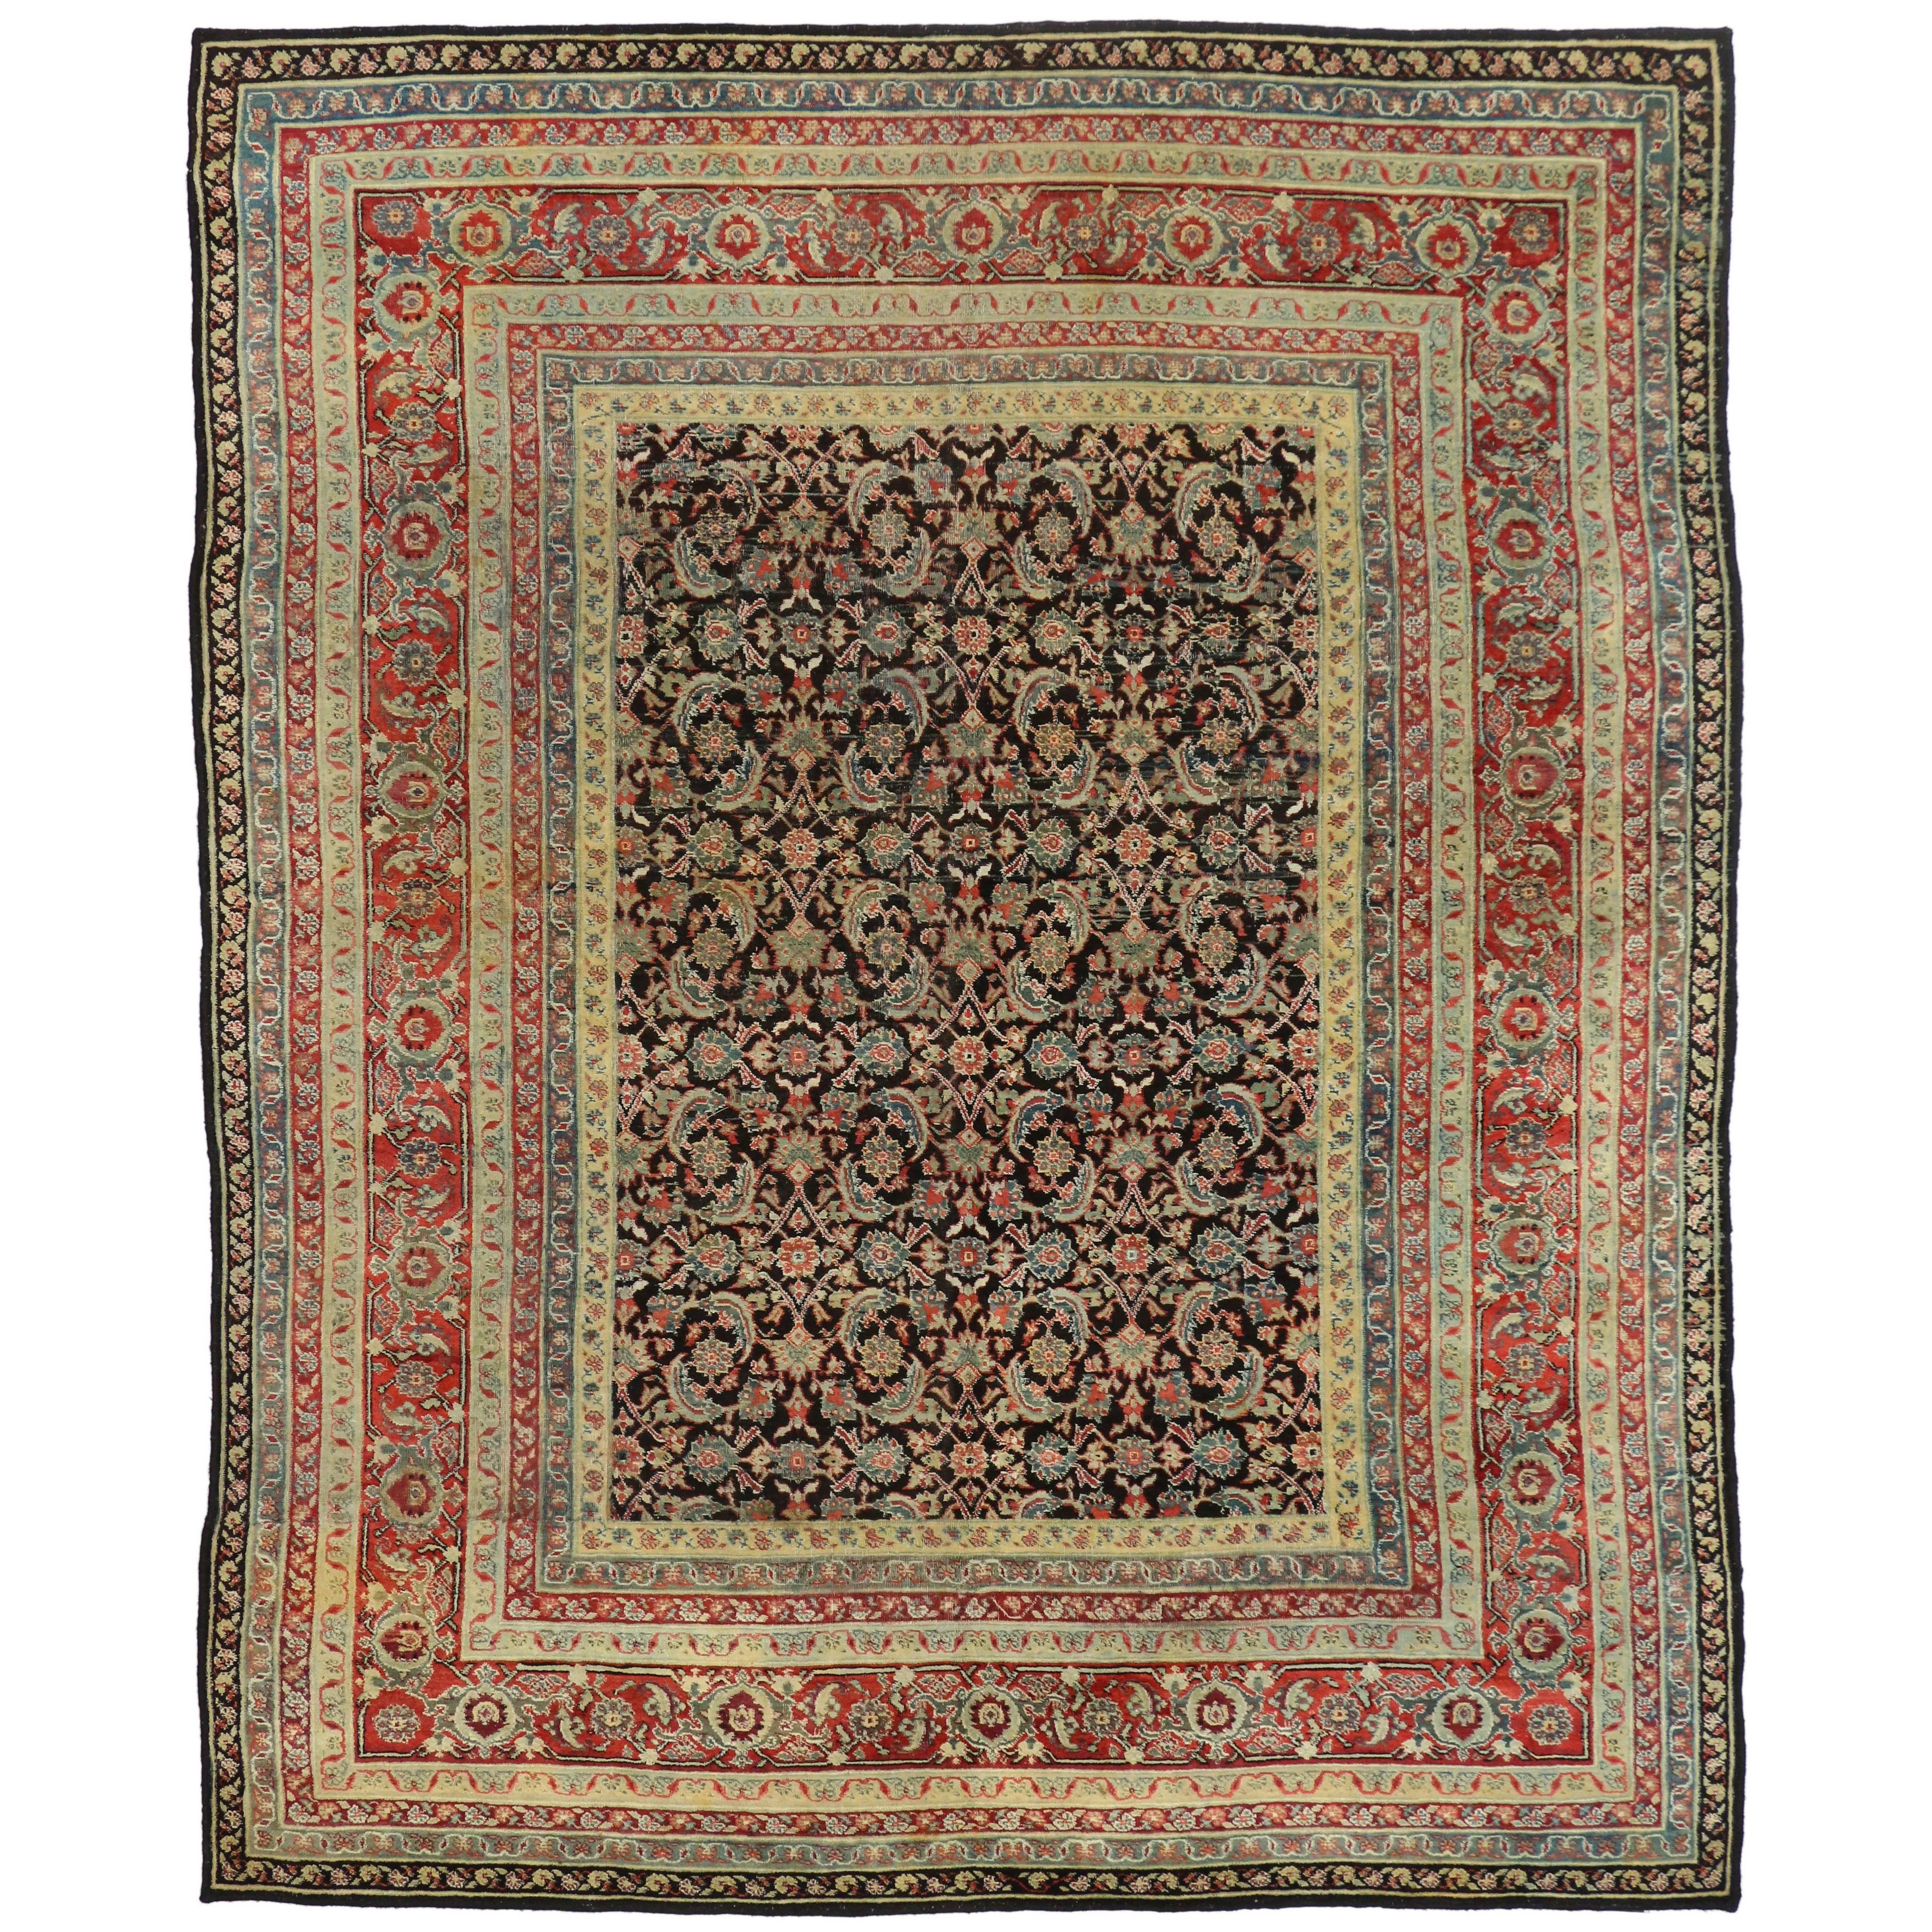 Agra-Teppich aus Indien im modernen, traditionellen Stil